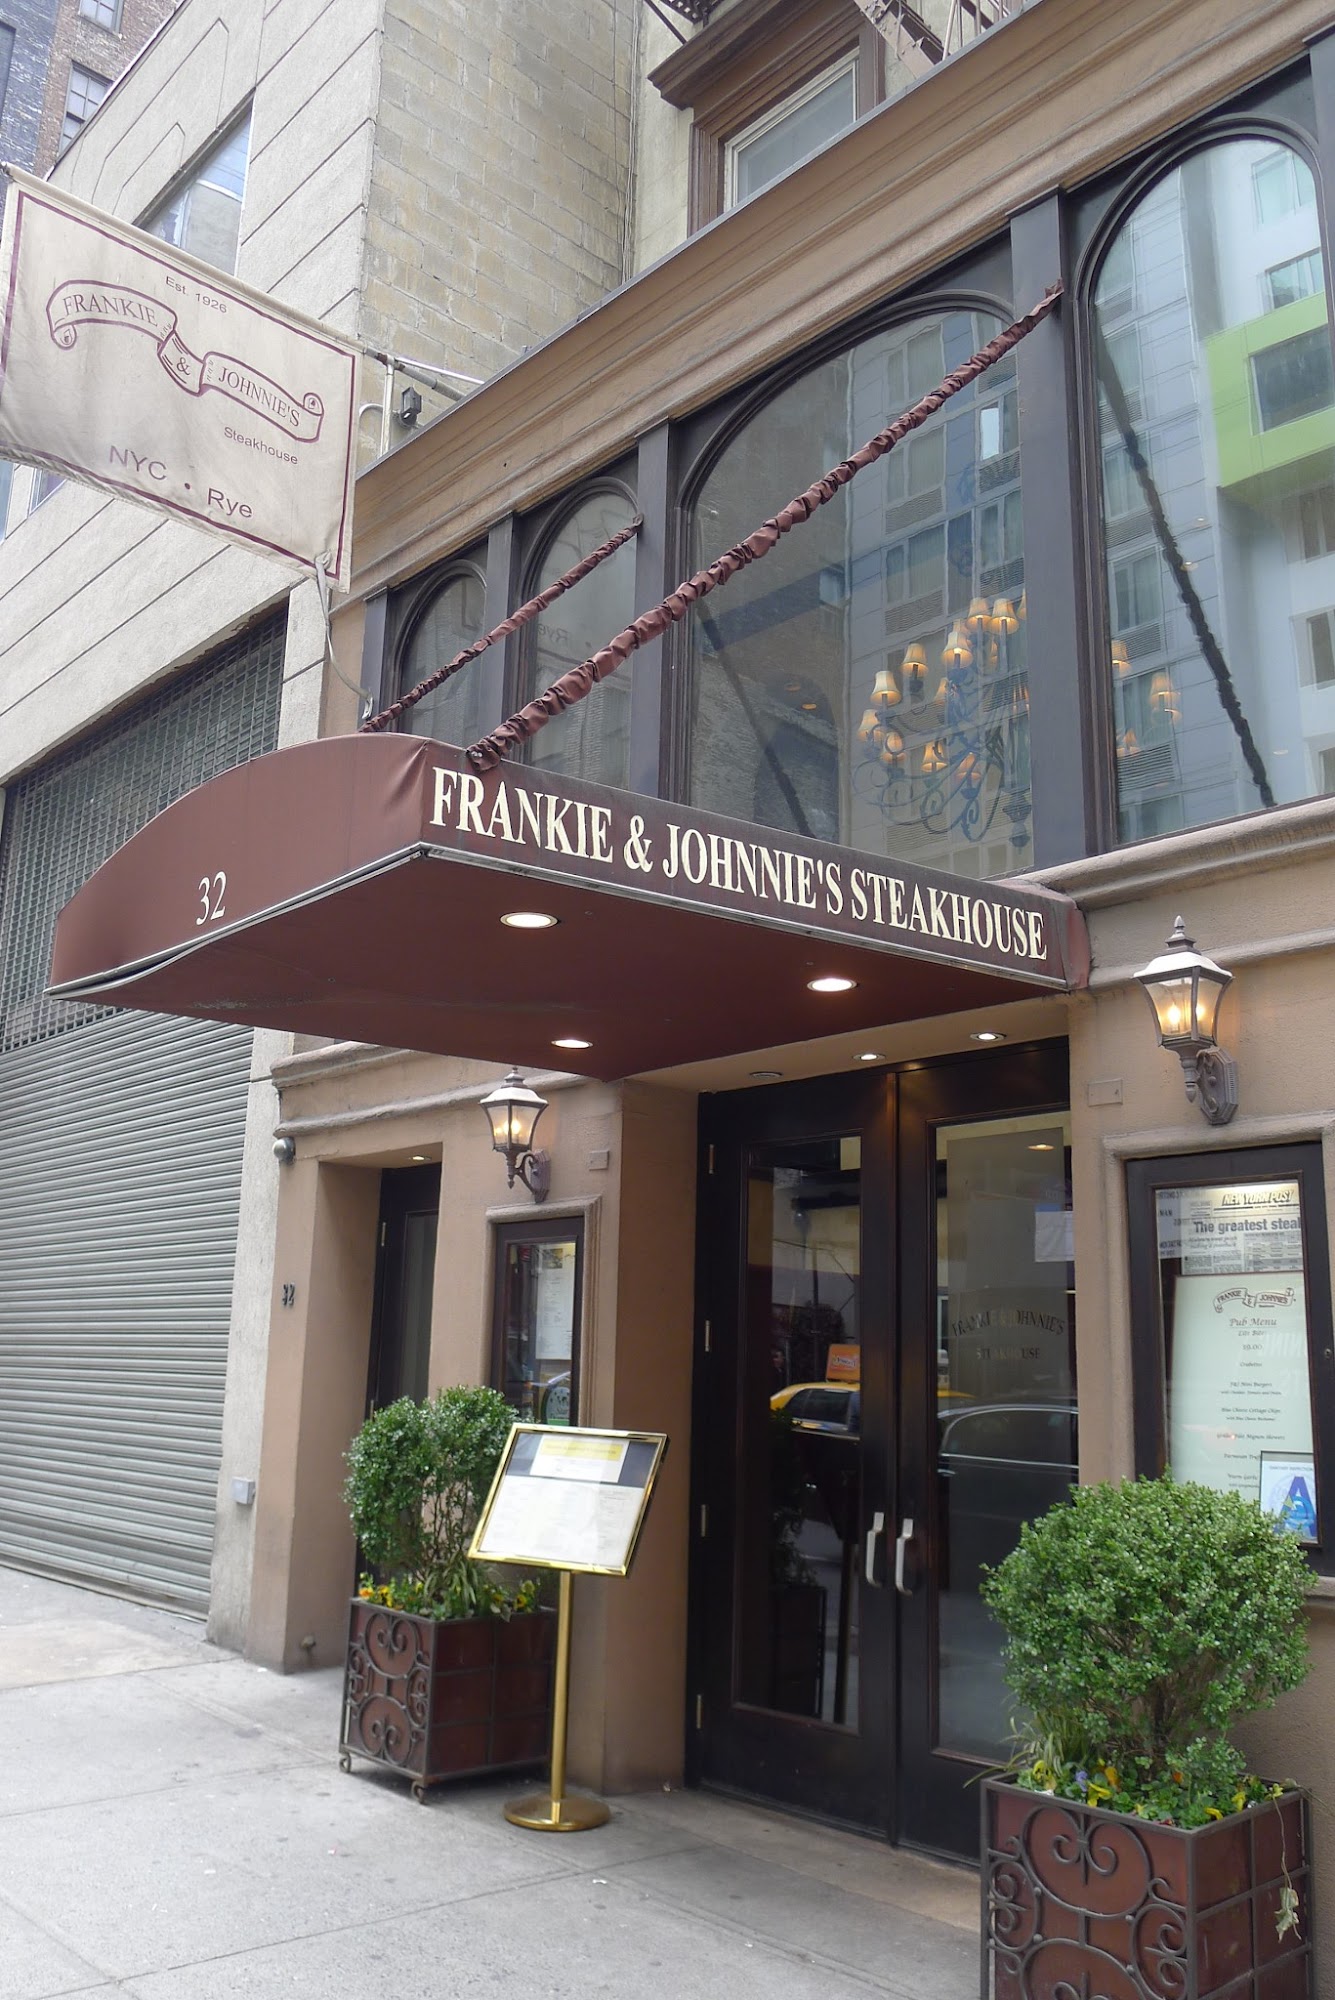 Frankie & Johnnie's Steakhouse